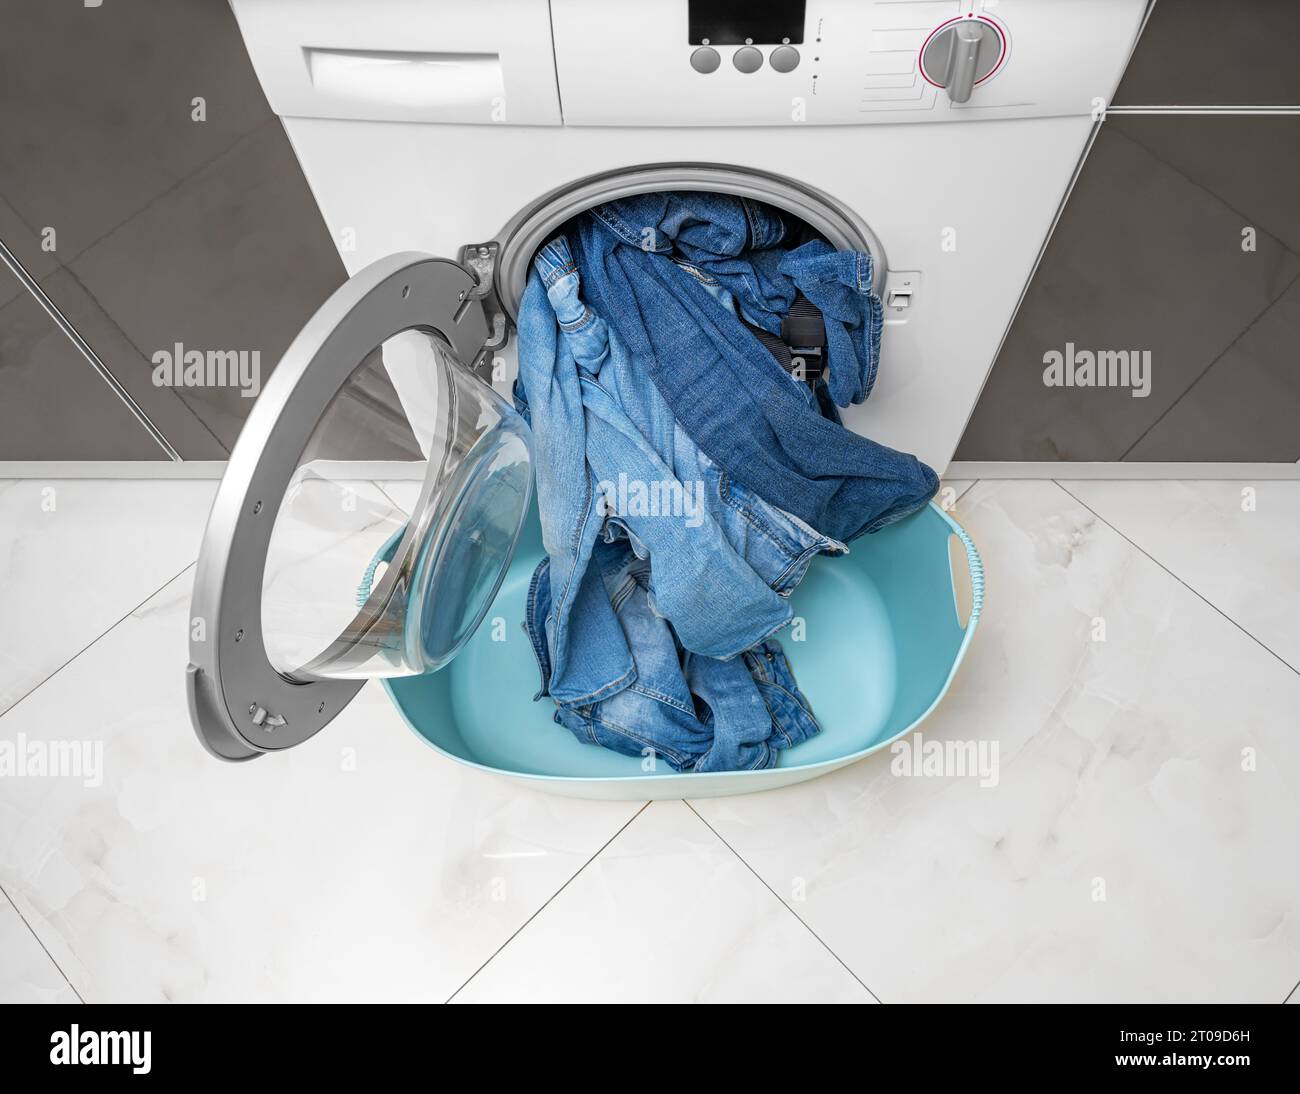 Washing denim items in the washing machine. Stock Photo